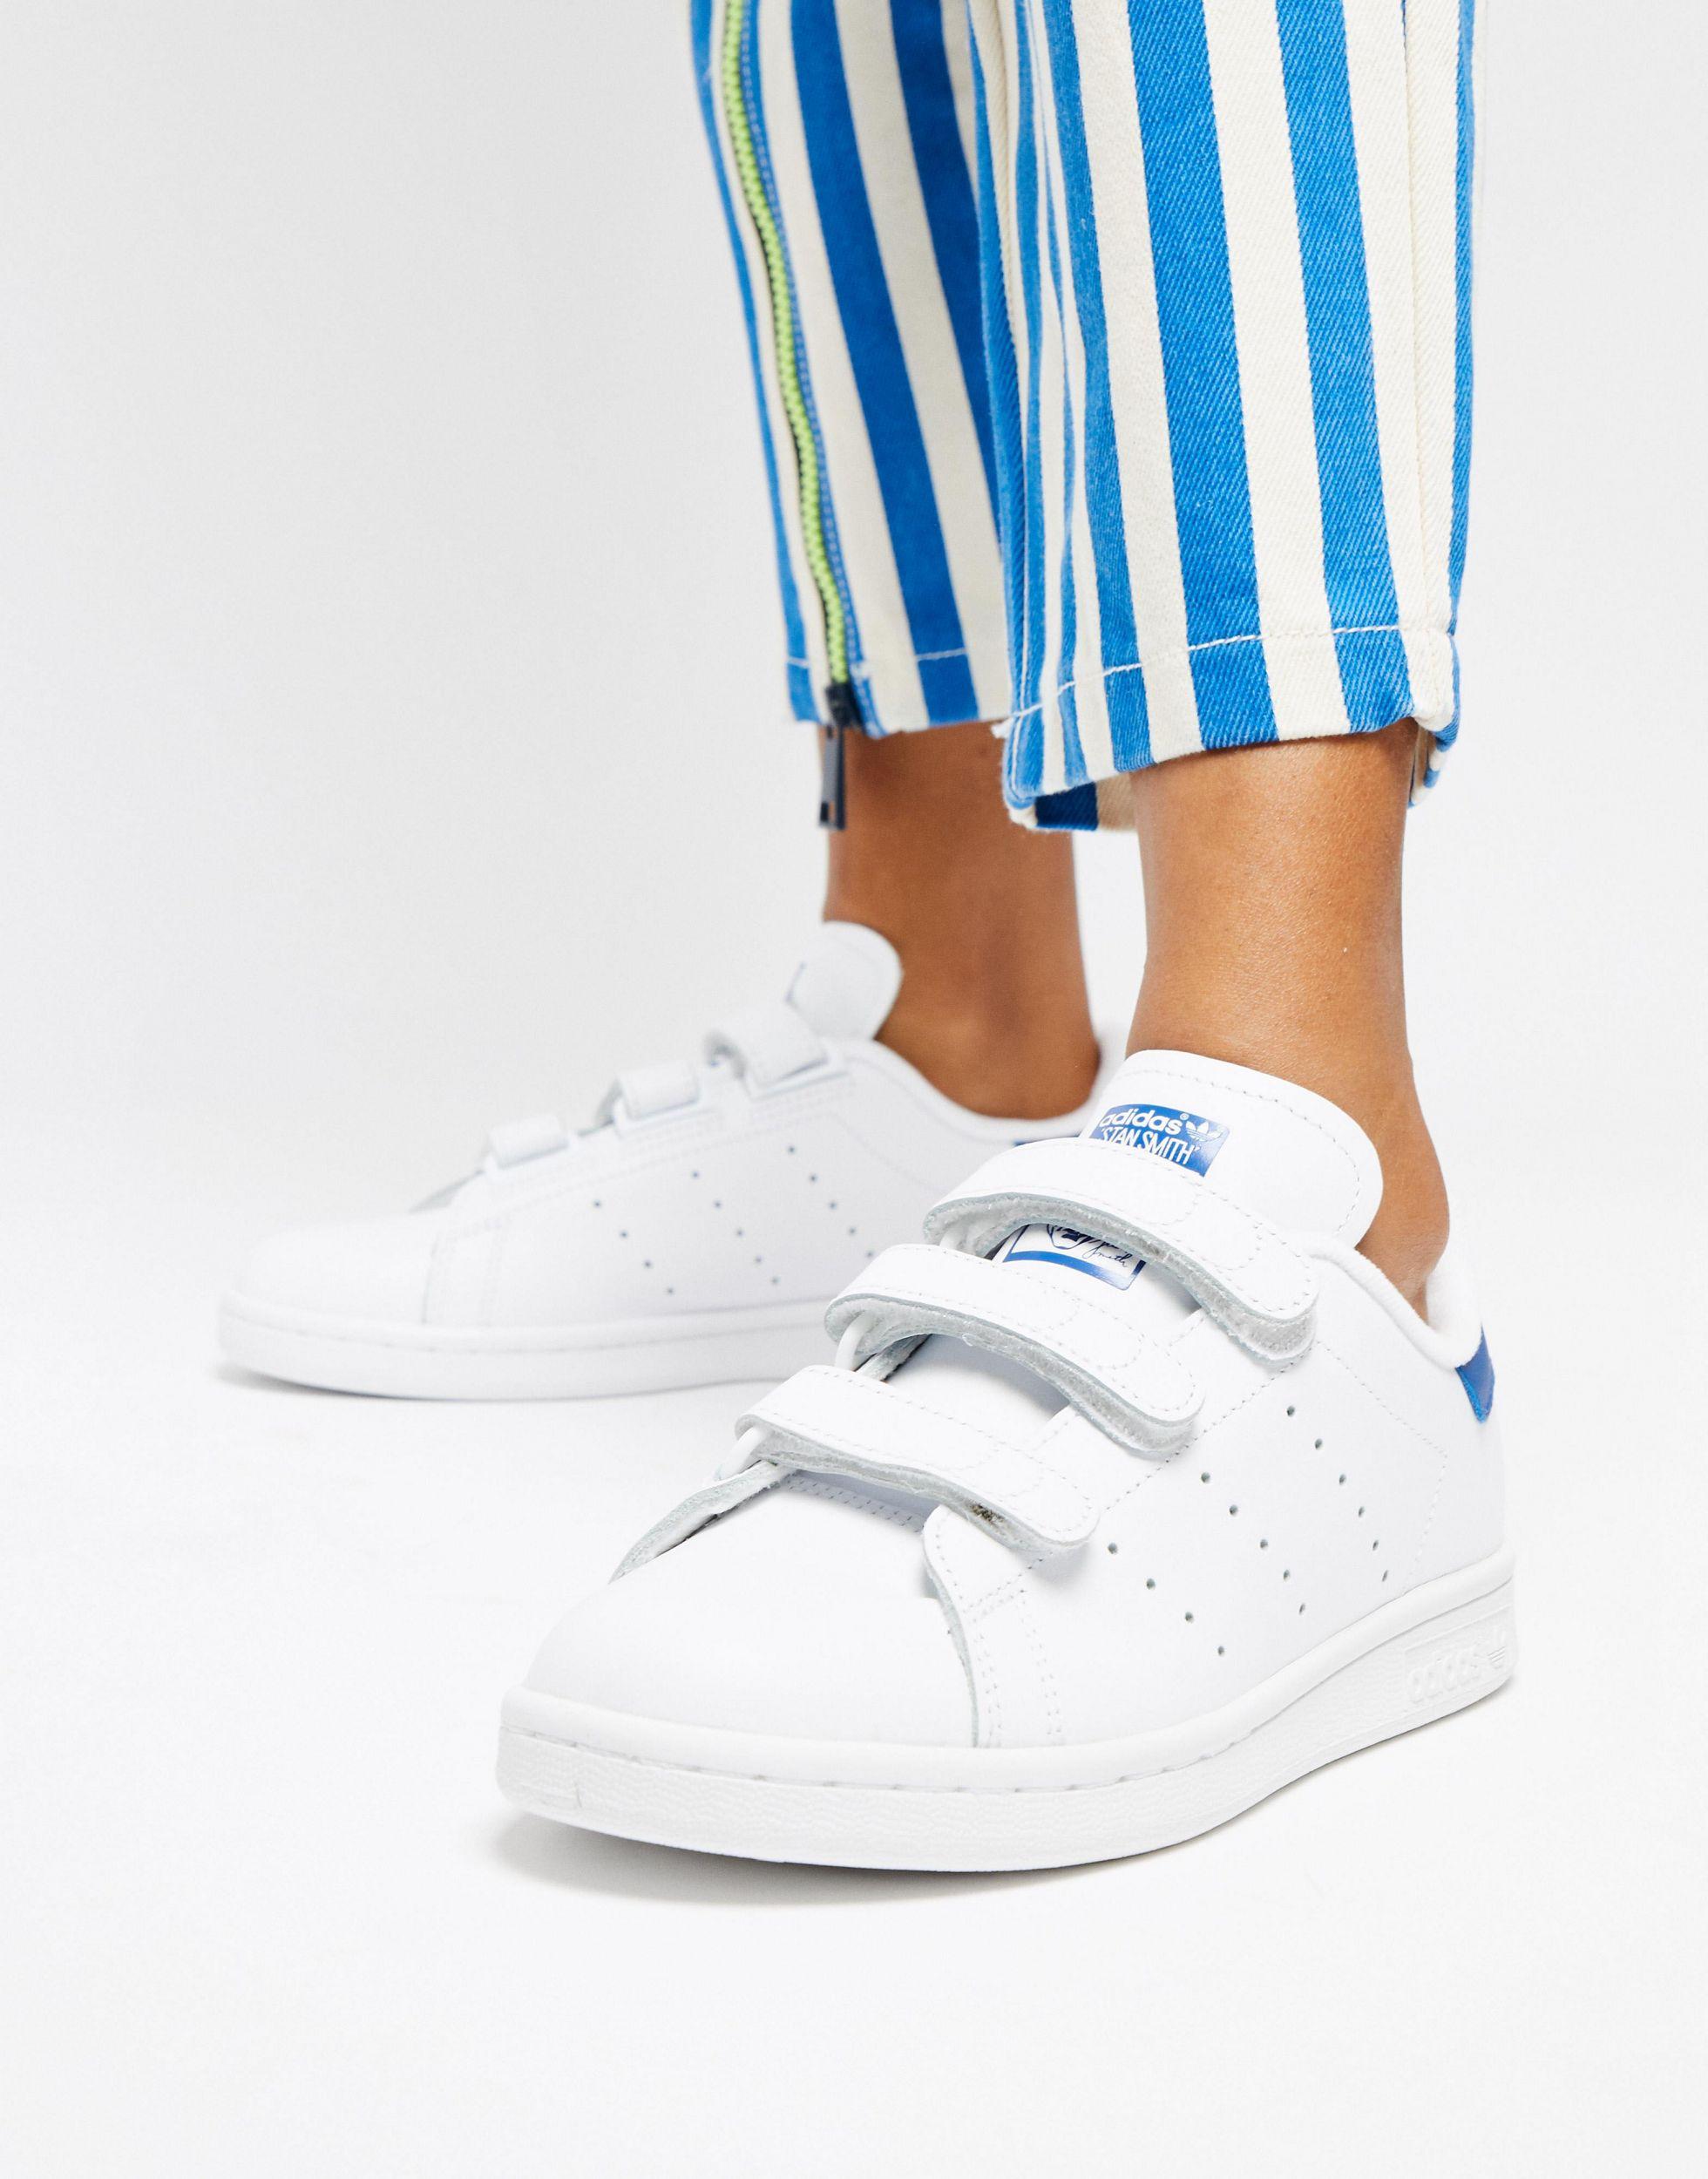 Wet en regelgeving spanning reinigen adidas Originals Stan Smith - Sneakers Met Klittenband in het Wit | Lyst NL